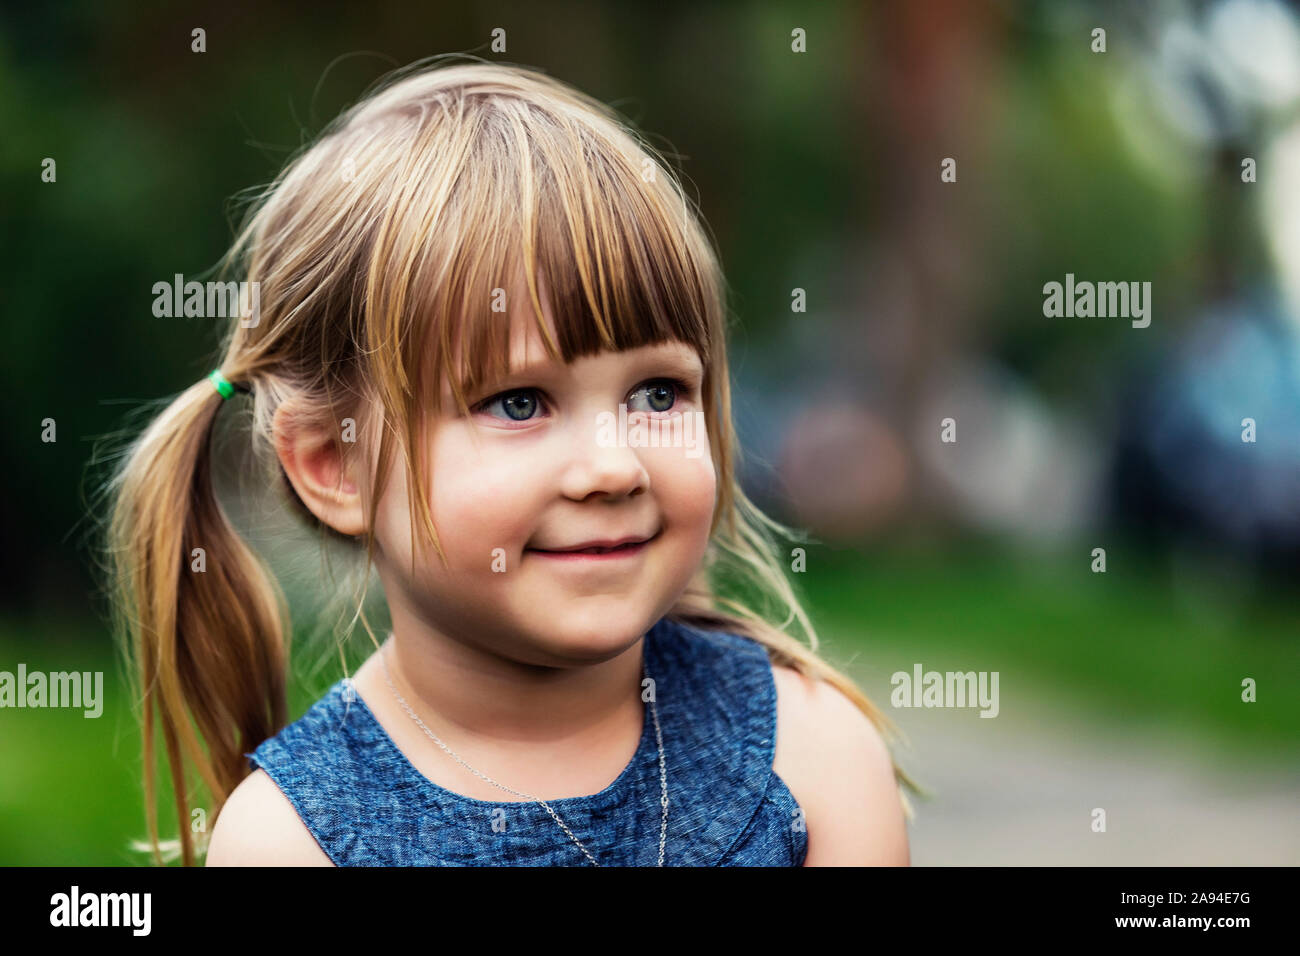 Portrait d'une jeune fille mignonne aux cheveux blonds; Edmonton, Alberta, Canada Banque D'Images